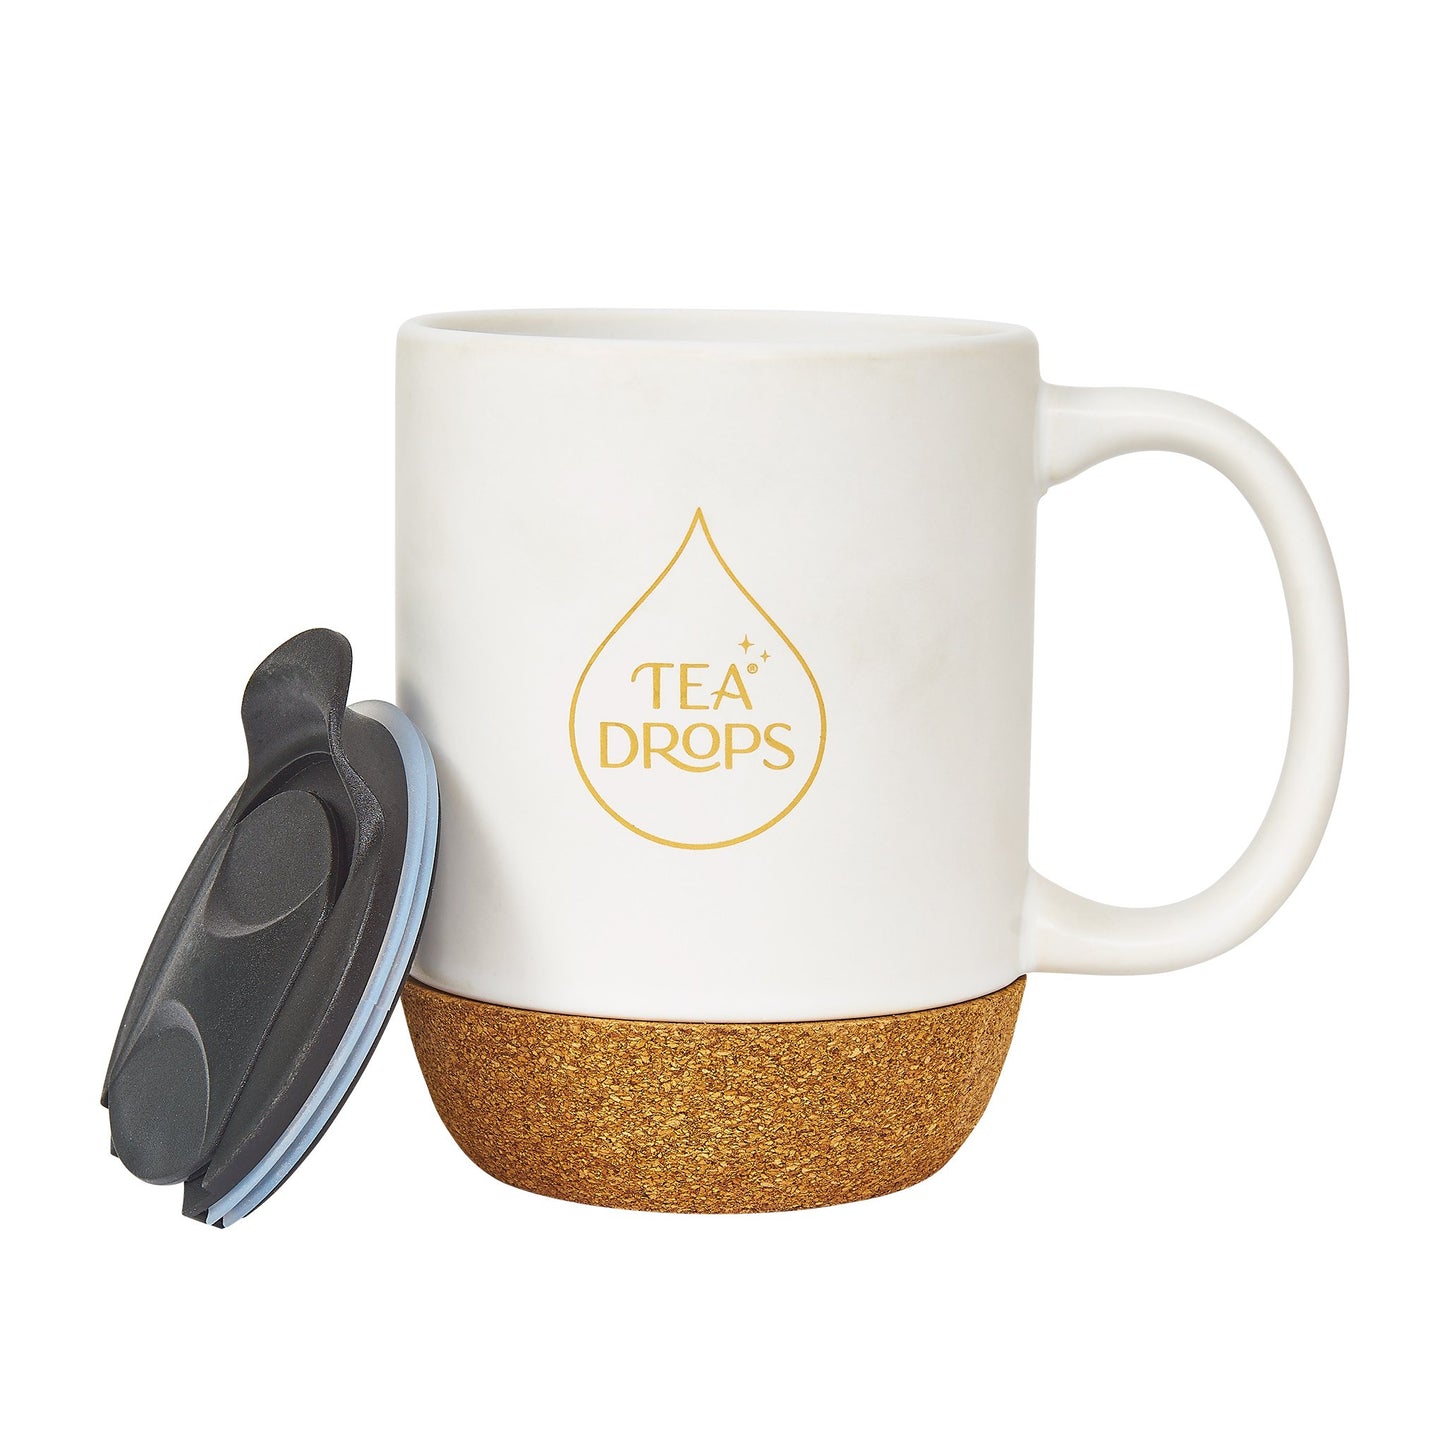 Tea Drops Mug Lid Off